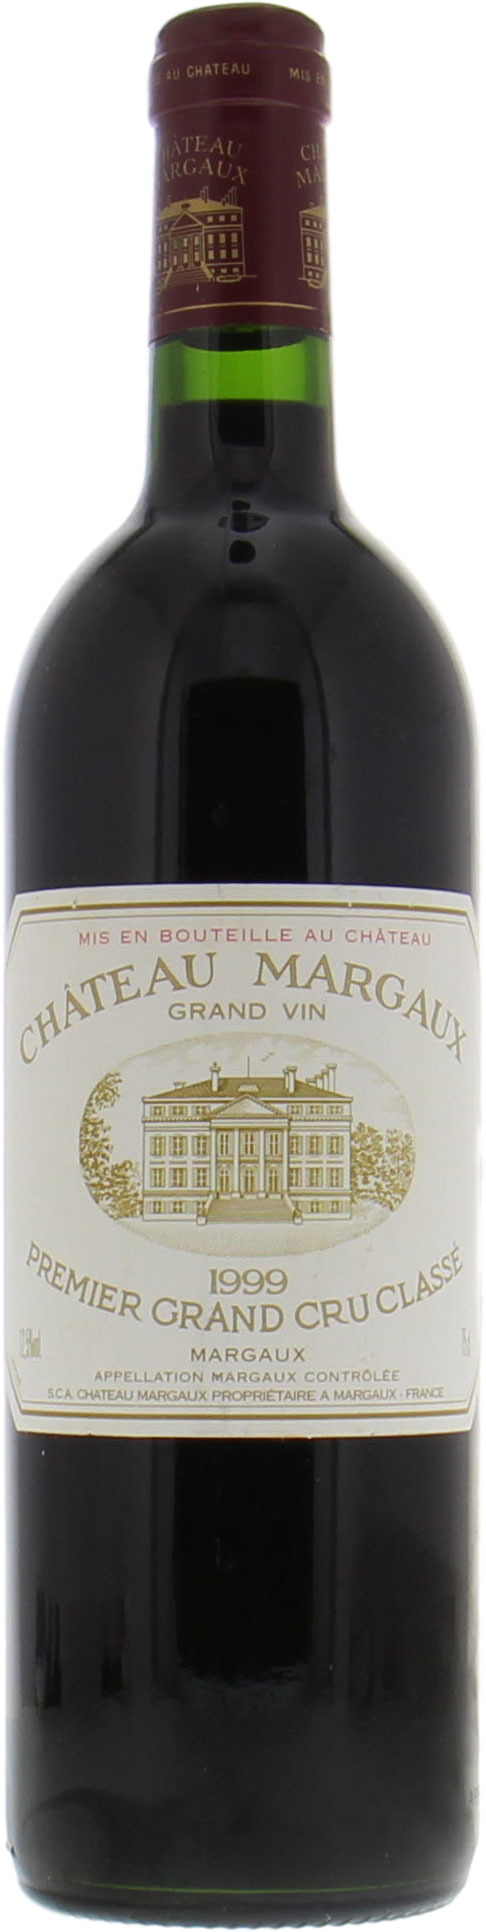 Chateau Margaux - Chateau Margaux 1999